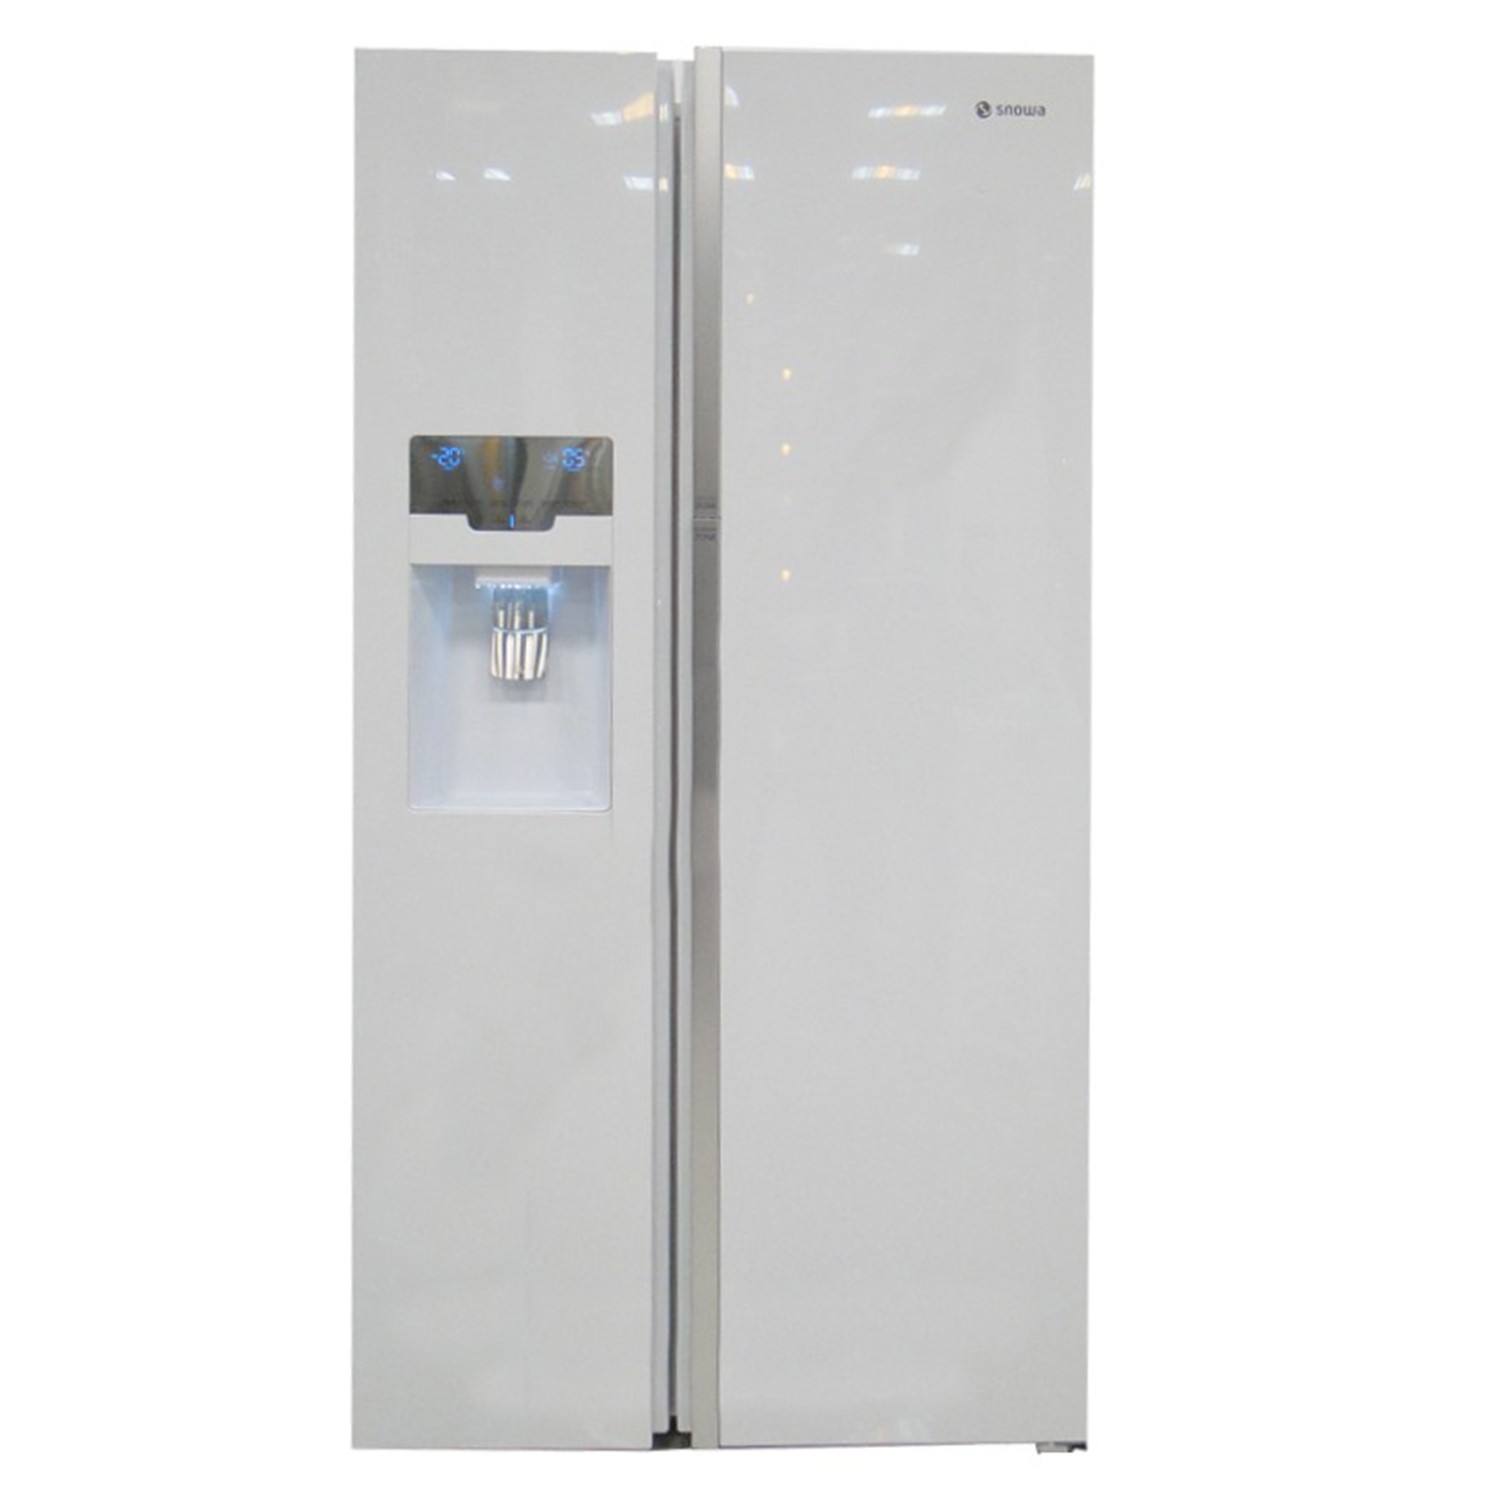 مشخصات، قیمت و خرید یخچال فریزر اسنوا ساید بای ساید سری گالری مدل SSP3500GW سفید براق - فروشگاه اینترنتی آنلاین کالا